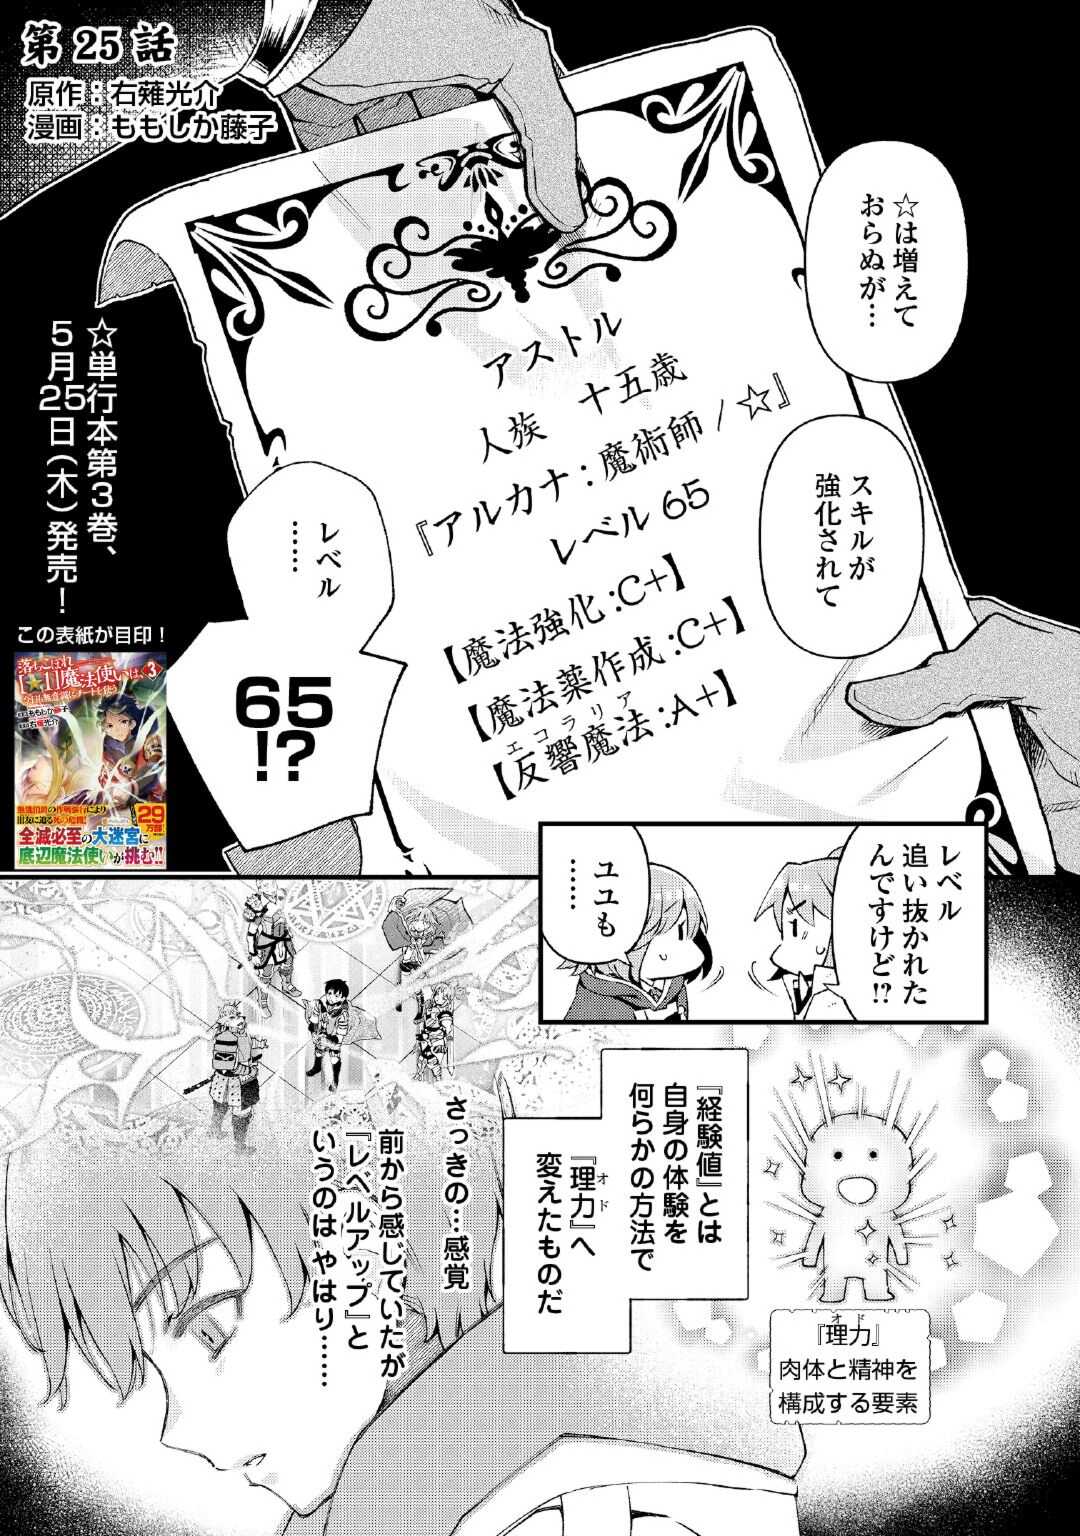 Ochikobore 1 Mahou Tsukai wa, Kyou mo Muishiki ni Cheat o Tsukau - Chapter 25 - Page 1